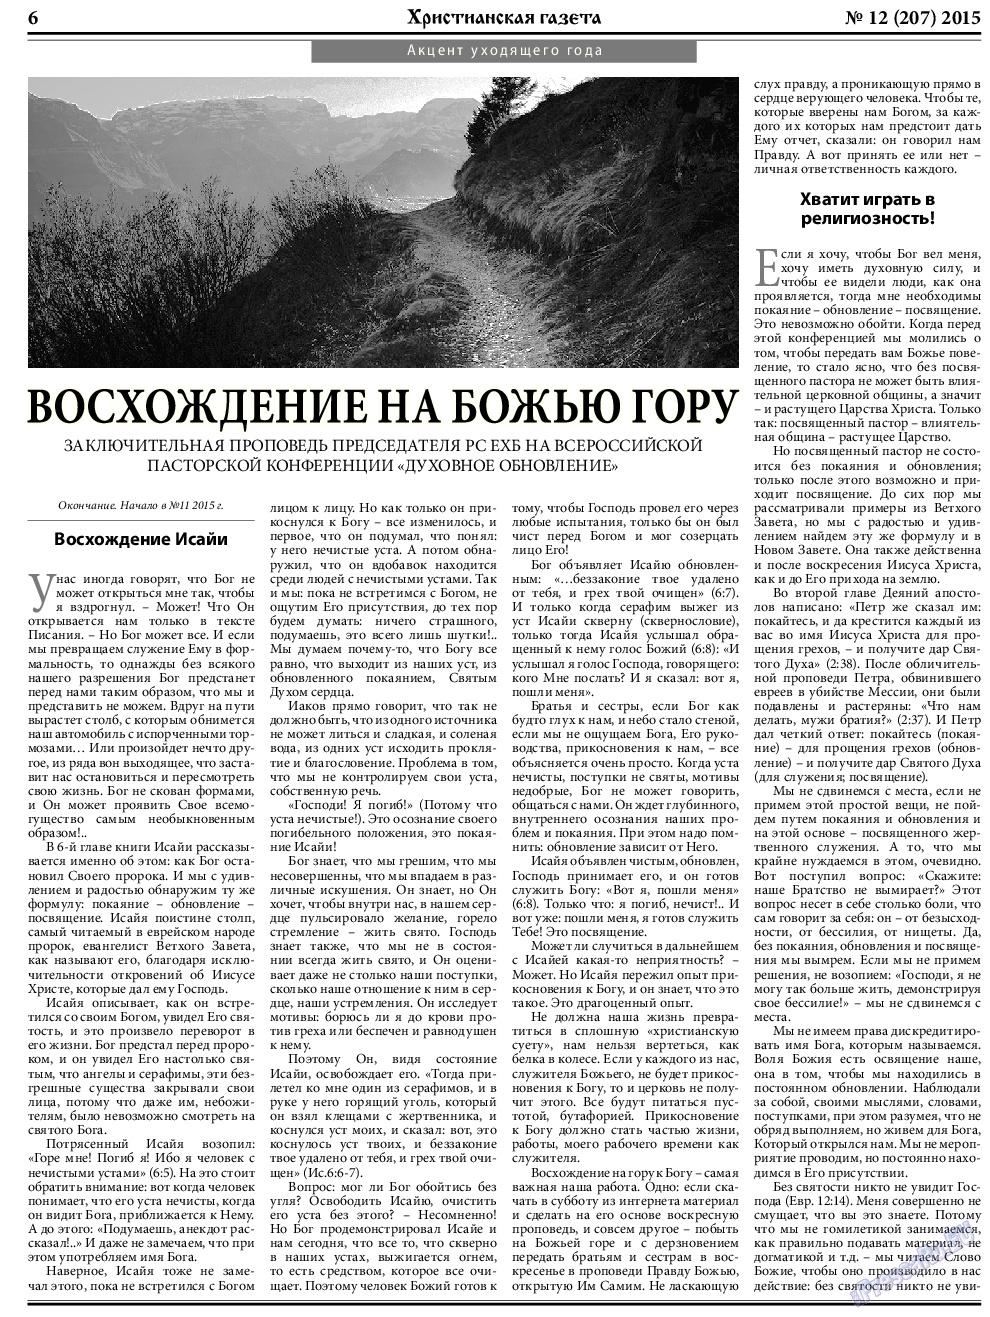 Христианская газета, газета. 2015 №12 стр.6